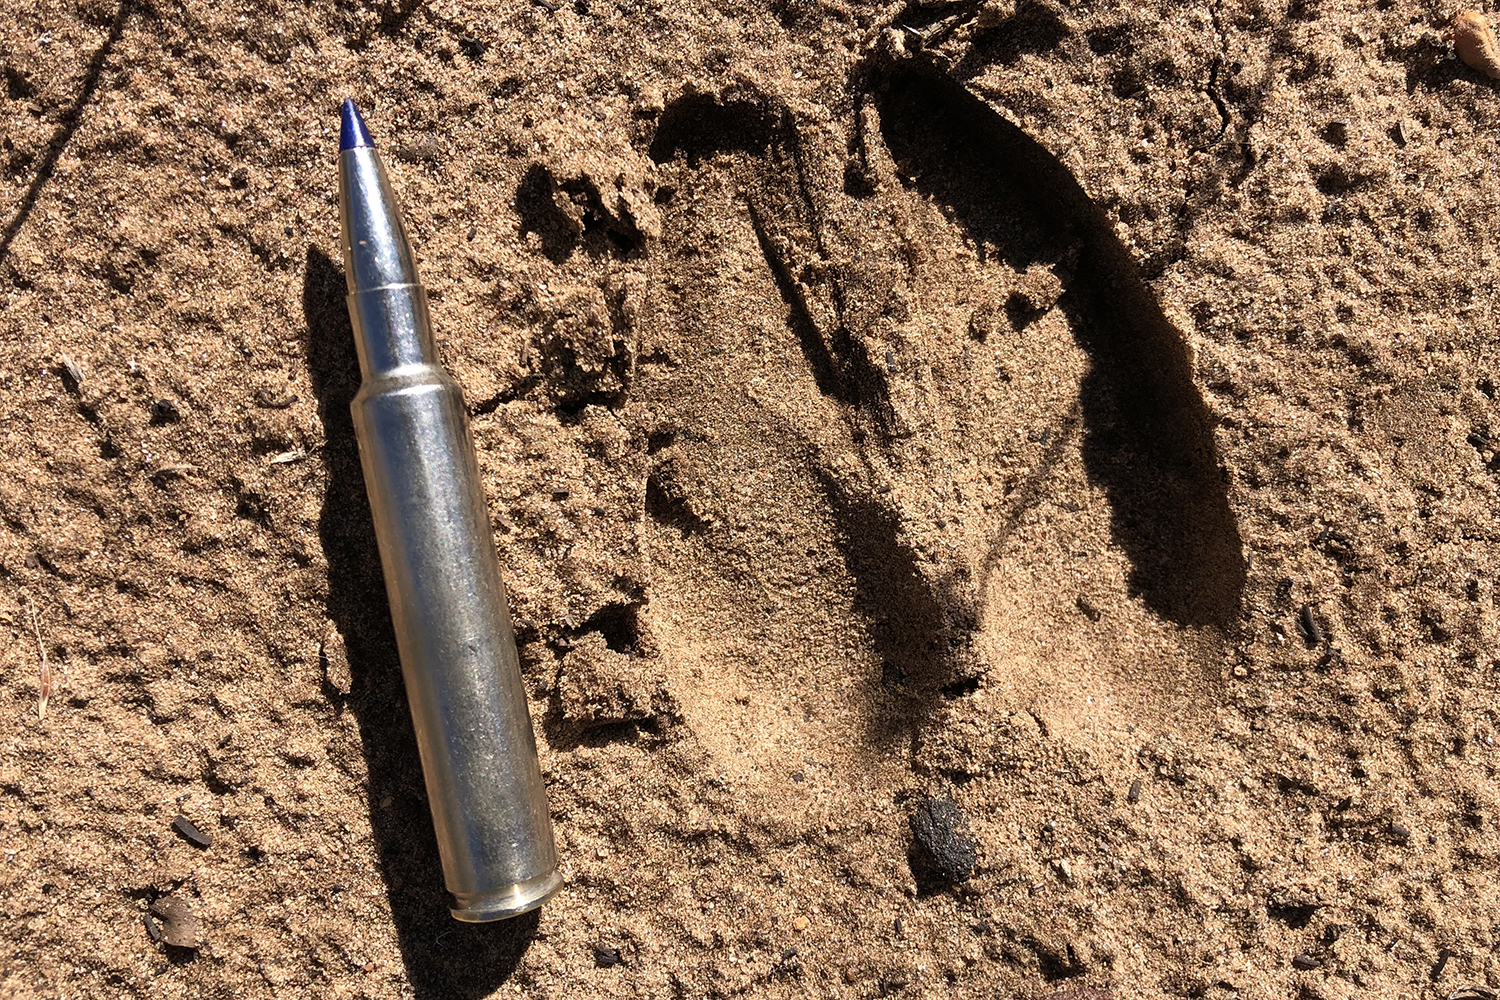 deer footprint and rifle cartridge